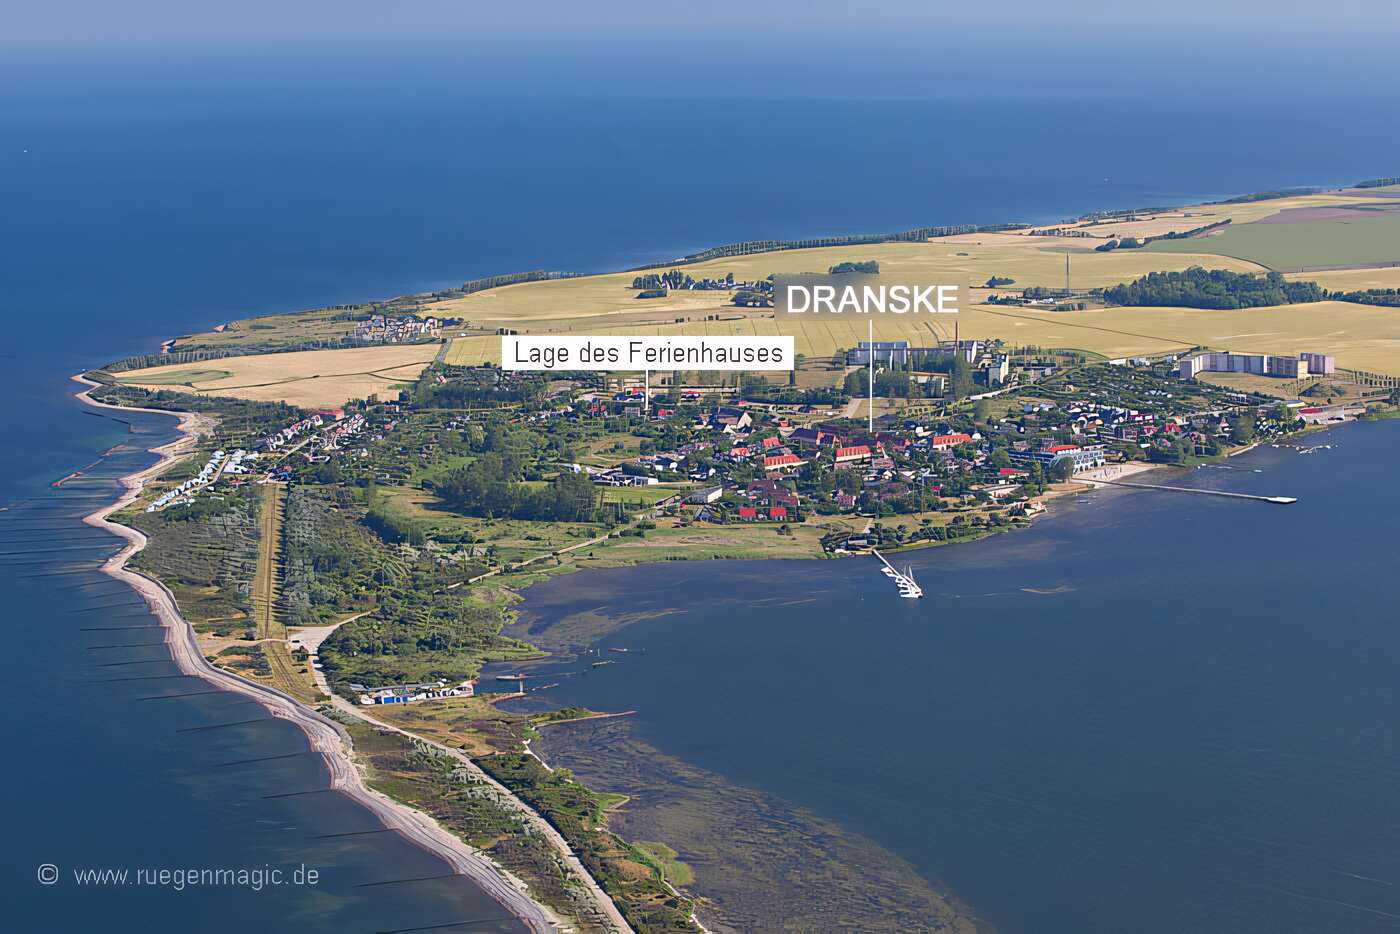 Luftaufnahme von Dranske mit Lage des Ferienhauses